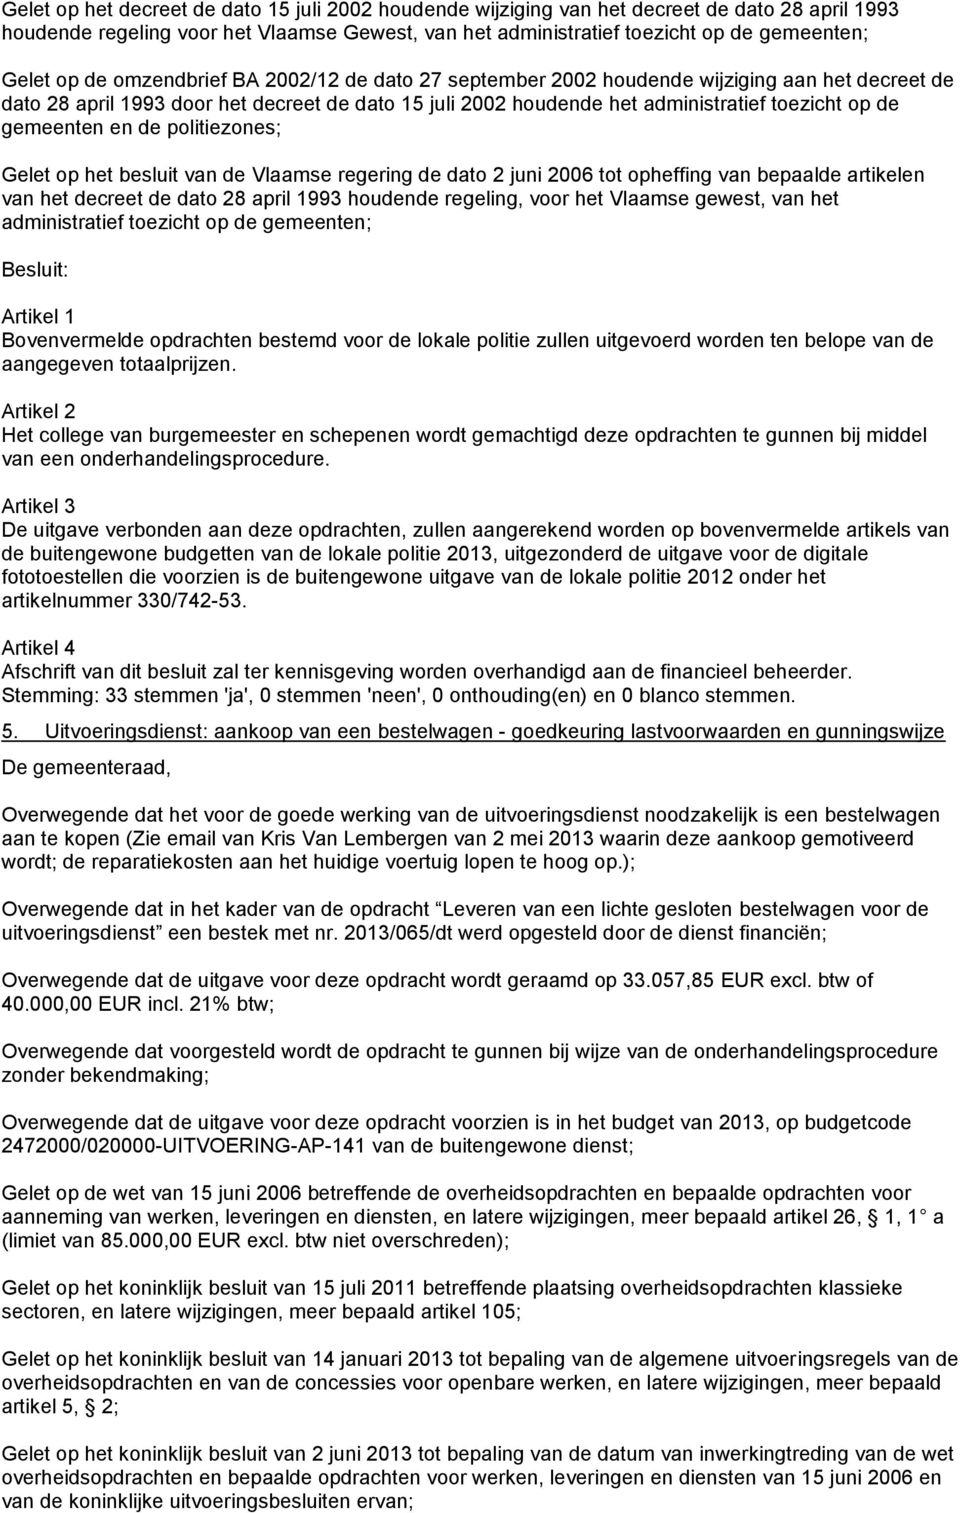 en de politiezones; Gelet op het besluit van de Vlaamse regering de dato 2 juni 2006 tot opheffing van bepaalde artikelen van het decreet de dato 28 april 1993 houdende regeling, voor het Vlaamse